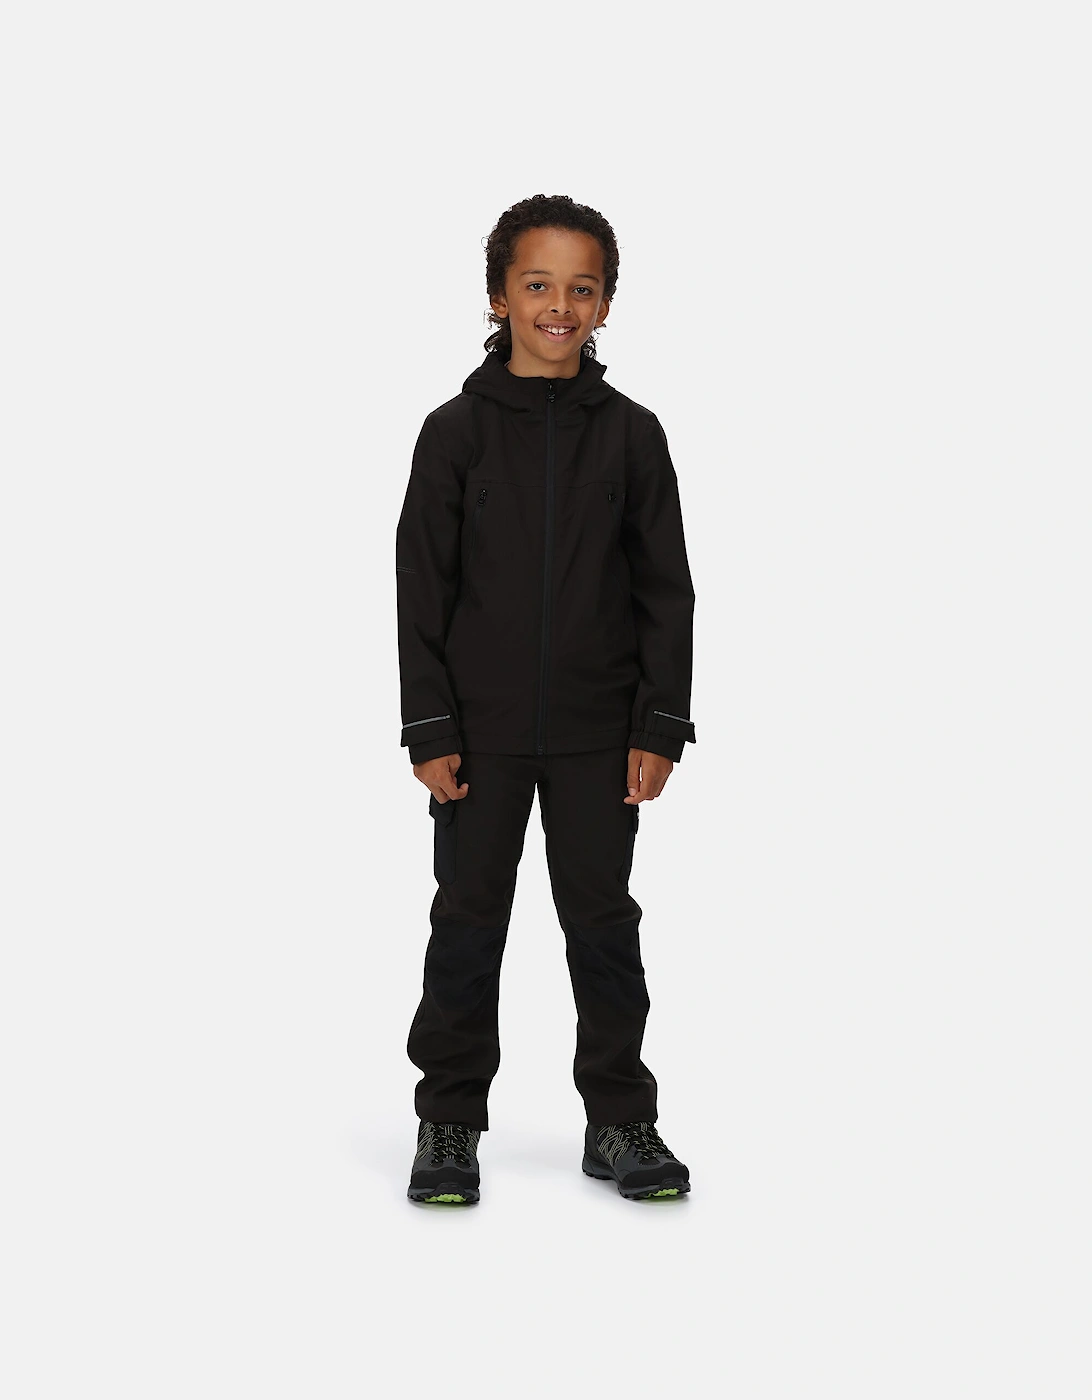 Childrens/Kids Pulton Waterproof Jacket